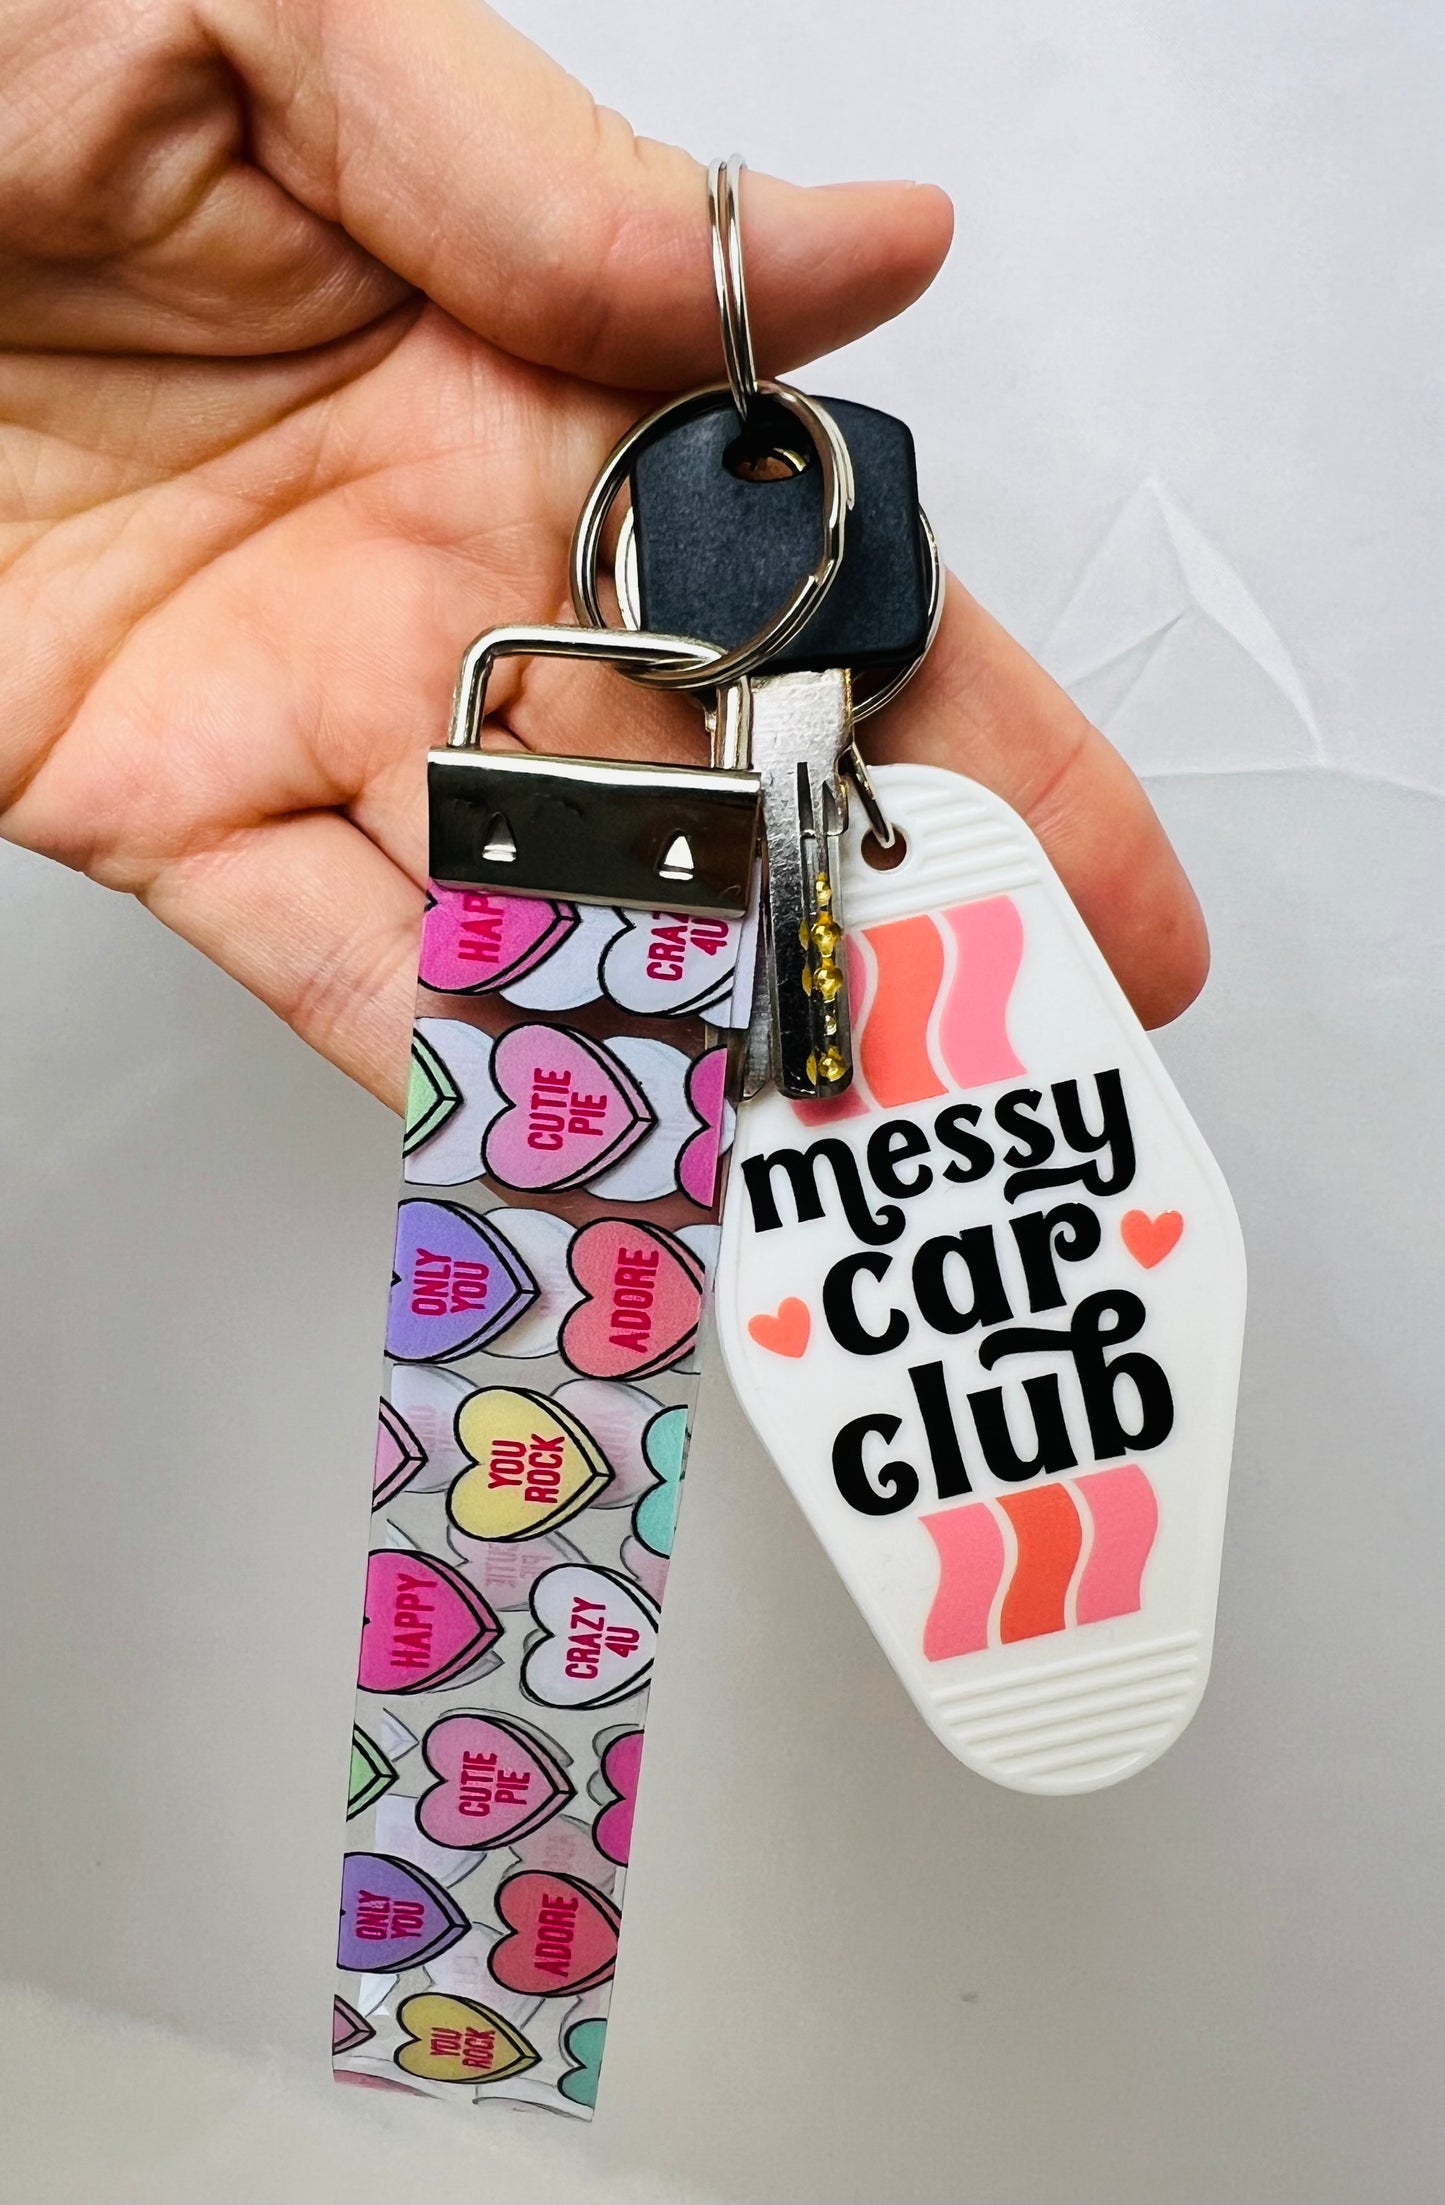 Messy car club motel keychain